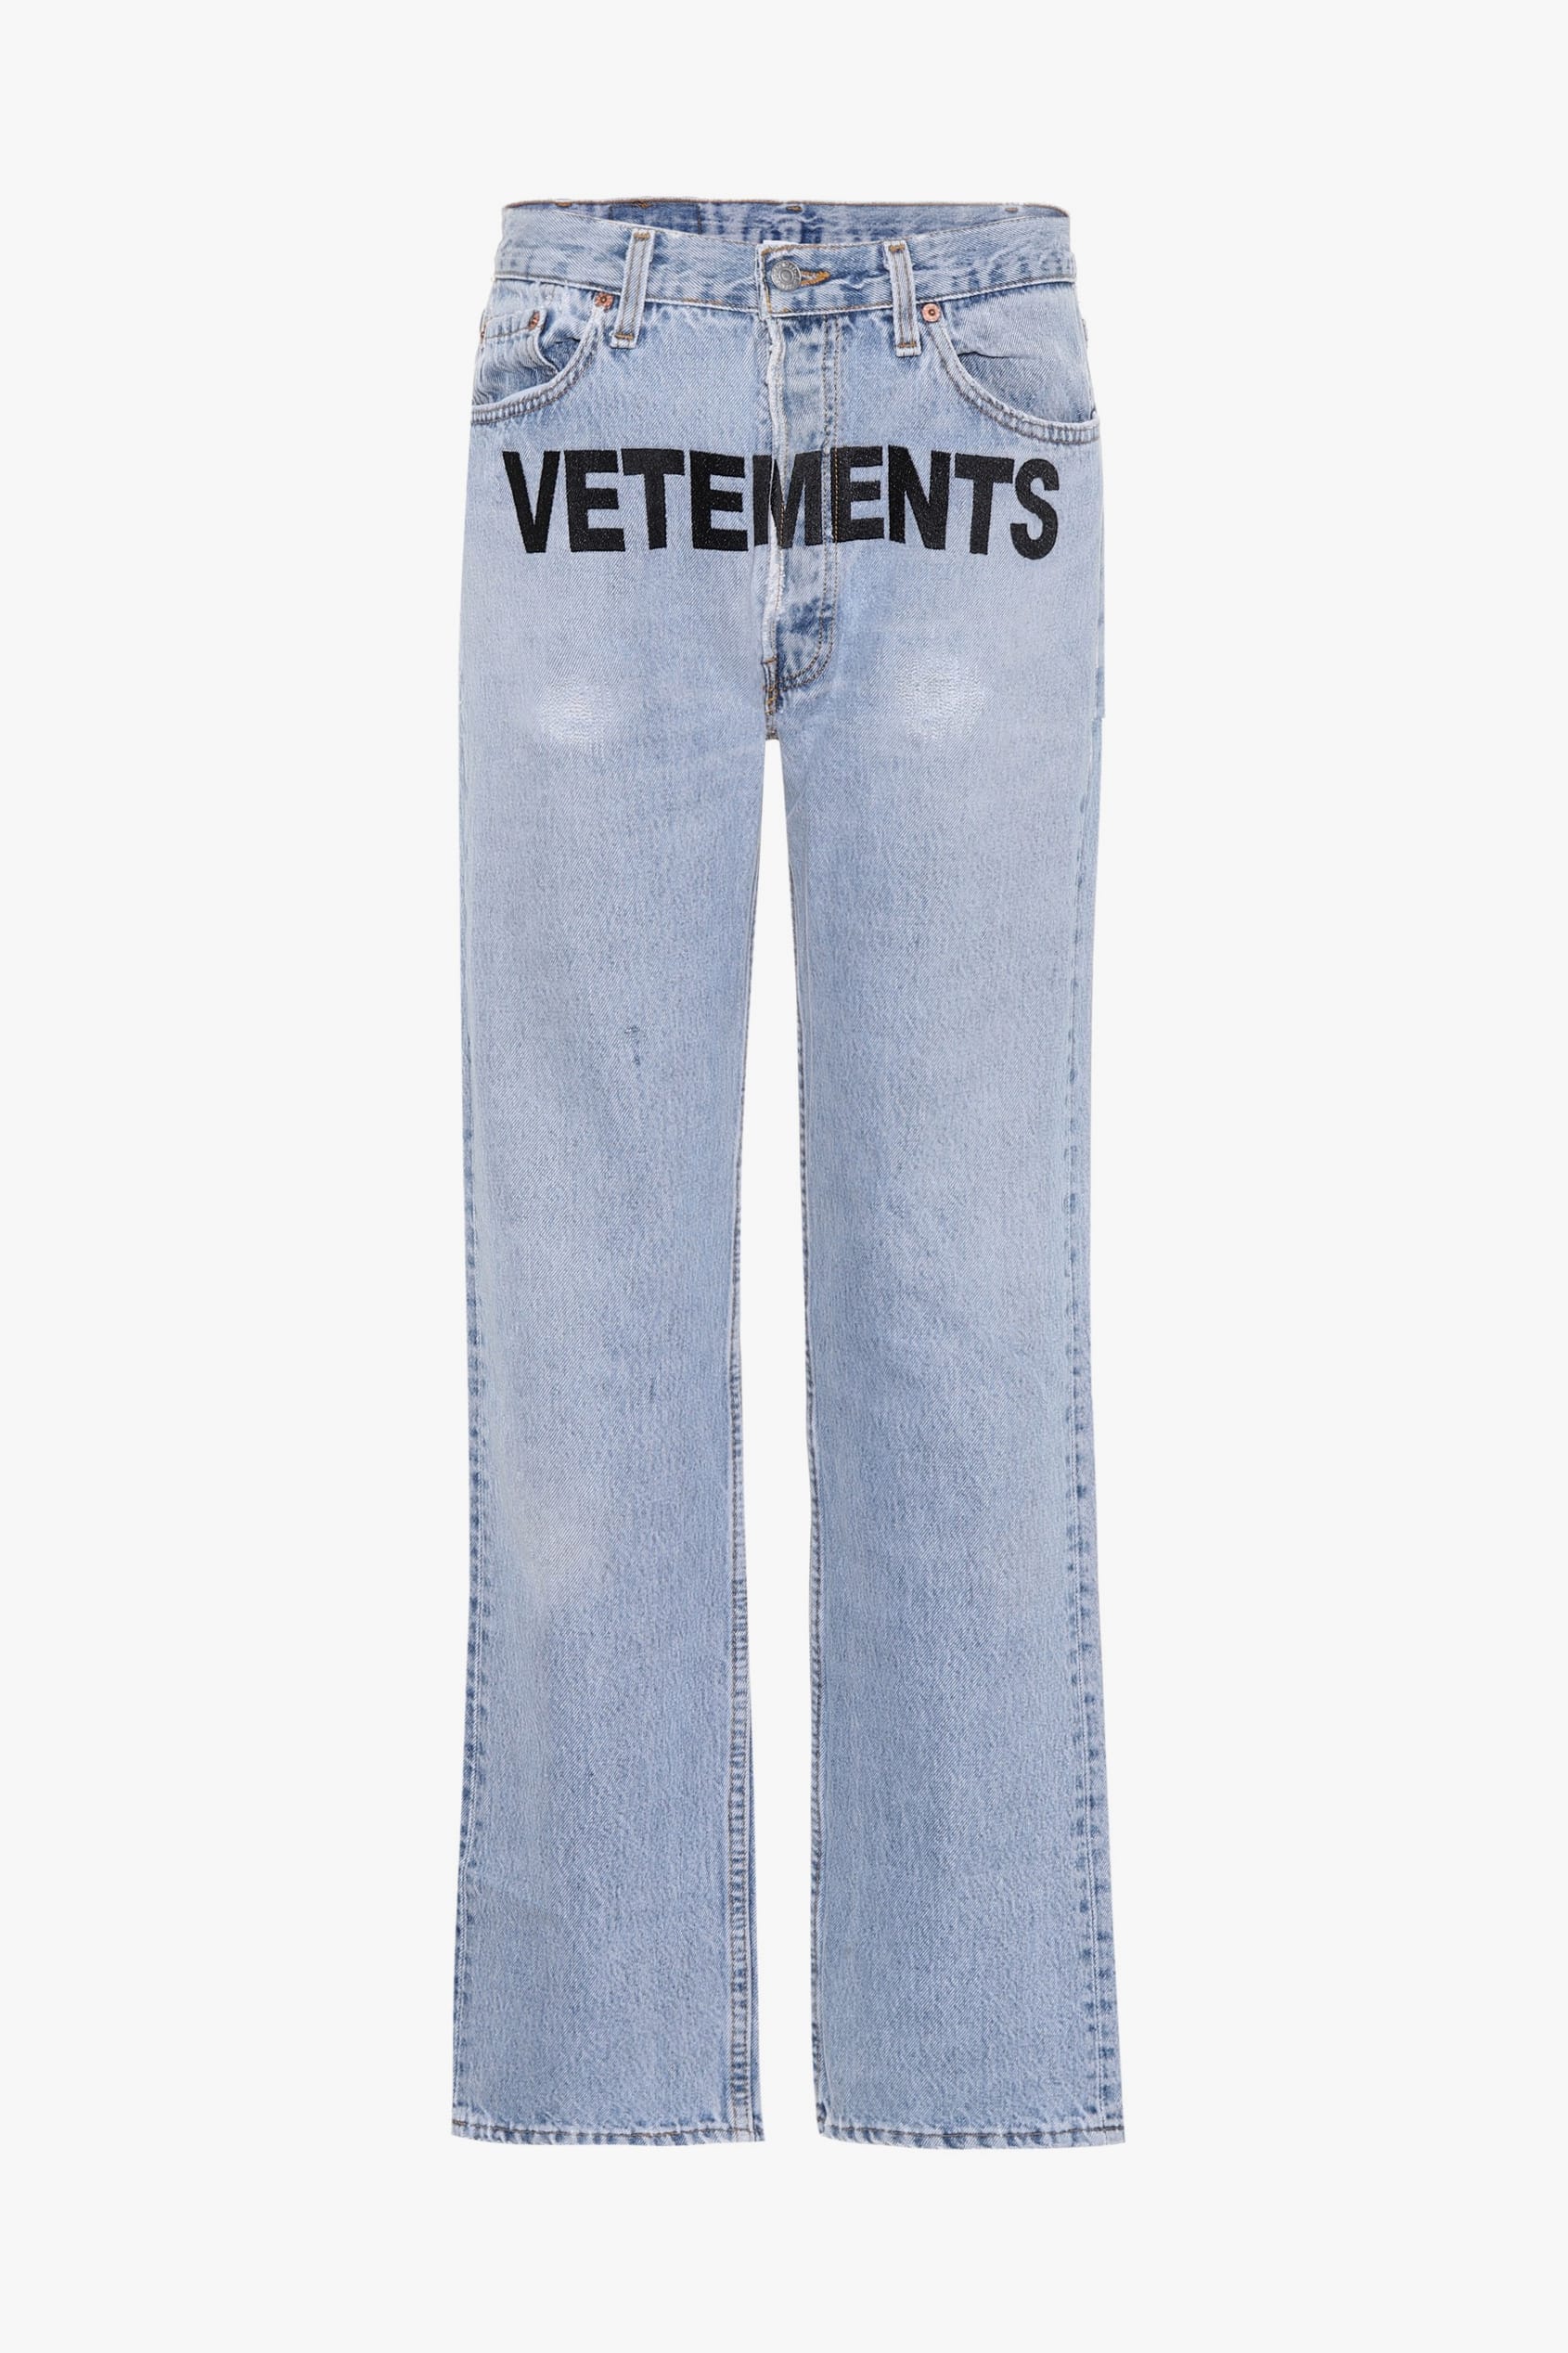 jeans vetements x levis